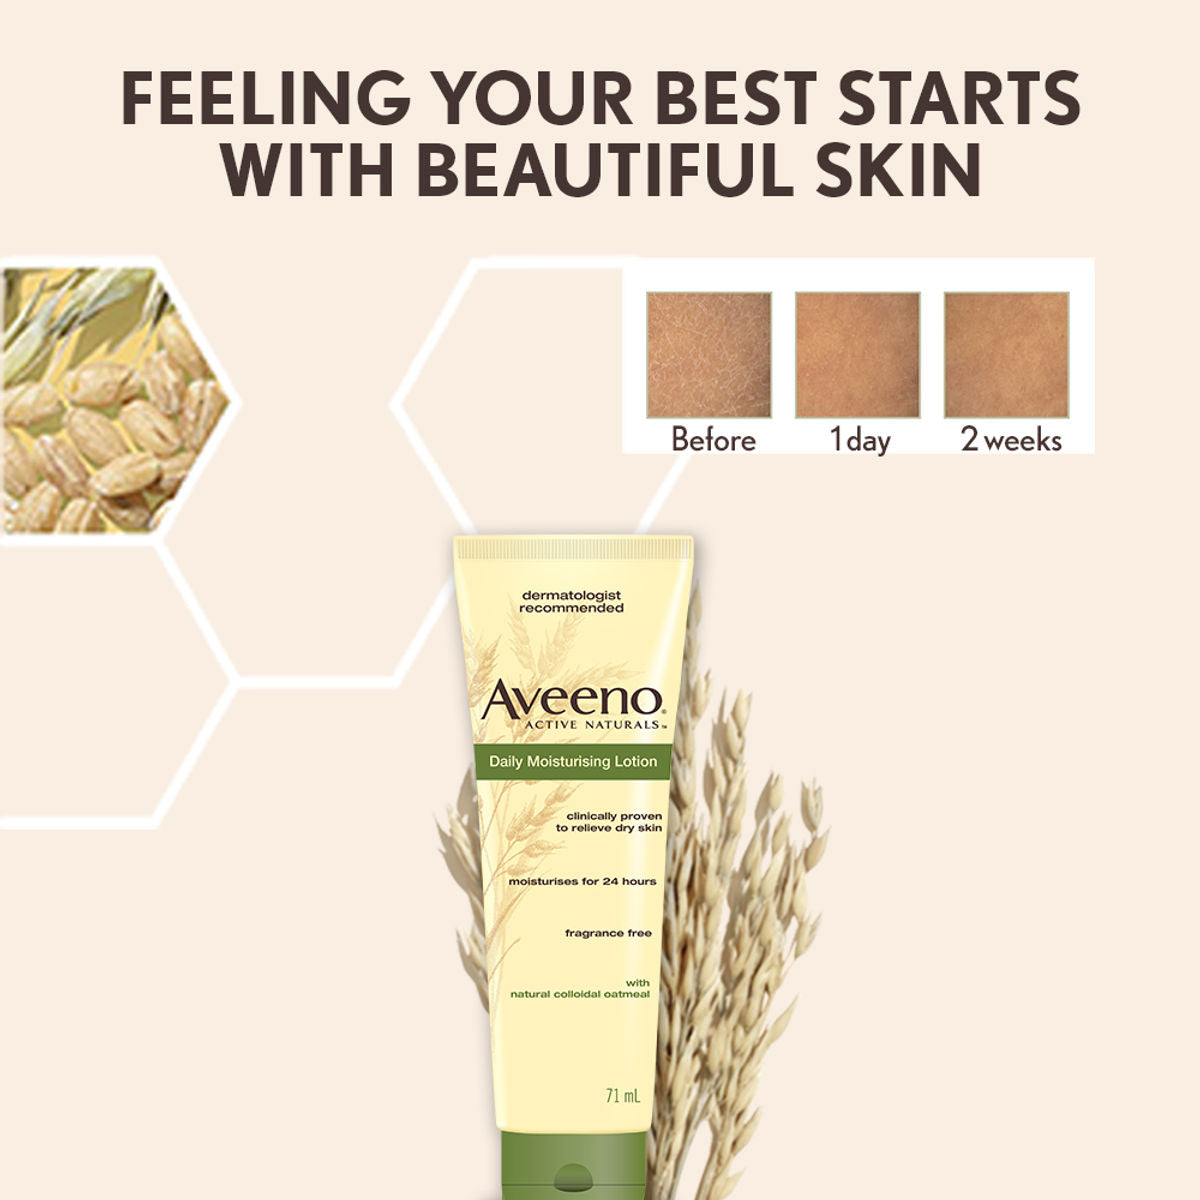 Aveeno Daily Moisturizing Lotion For Dry Skin (71 ml) Aveeno